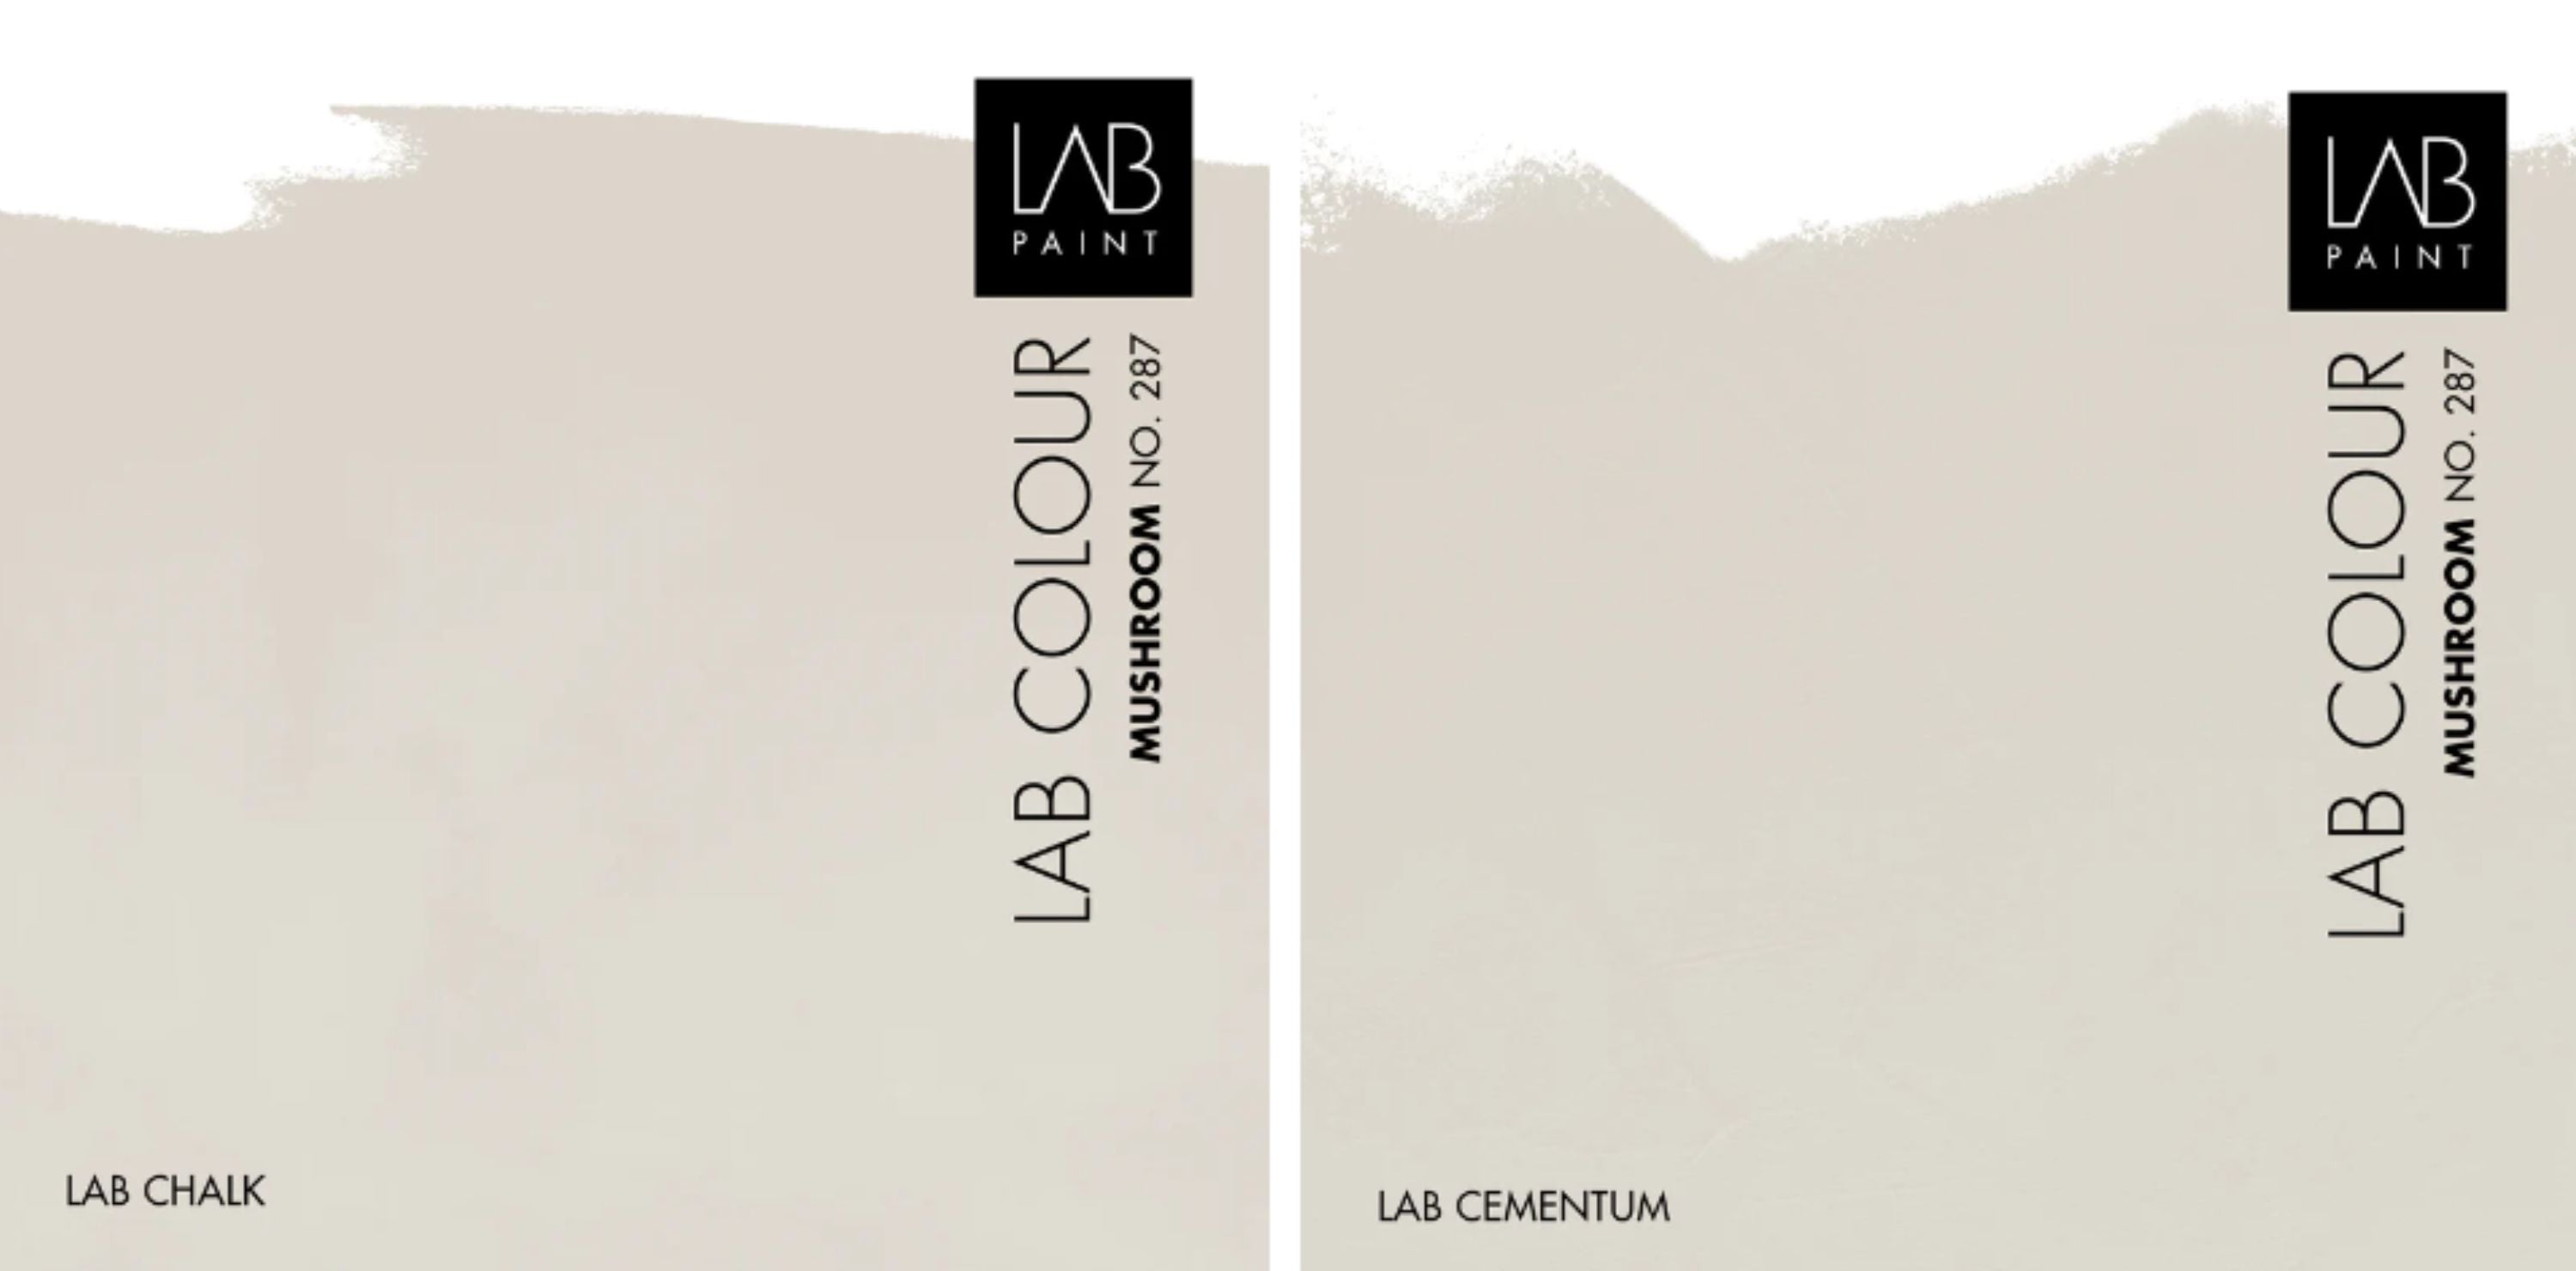 LAB Chalk (kalkverf) en LAB Cementum (betonlook)